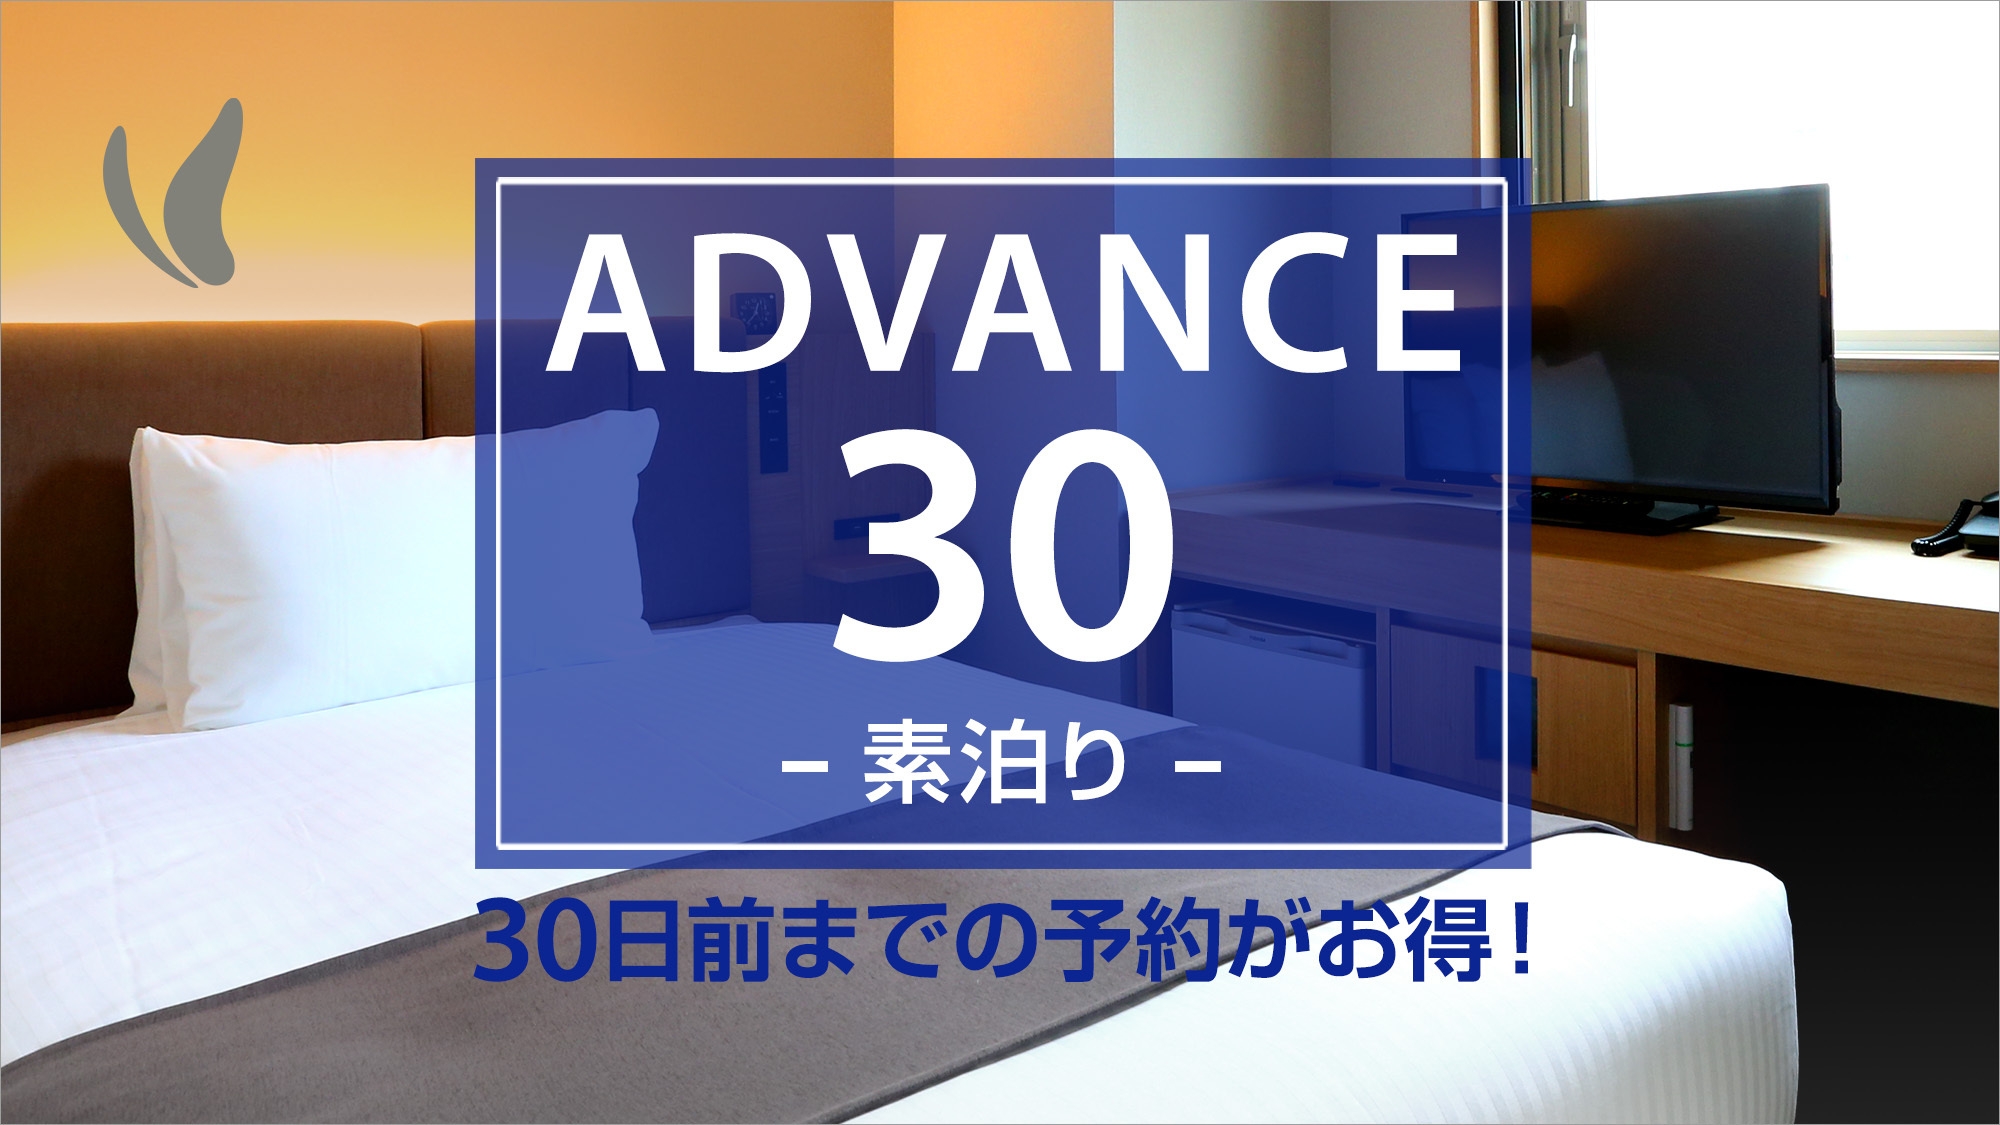 【ADVANCE30】【さき楽】30日前までの予約プラン